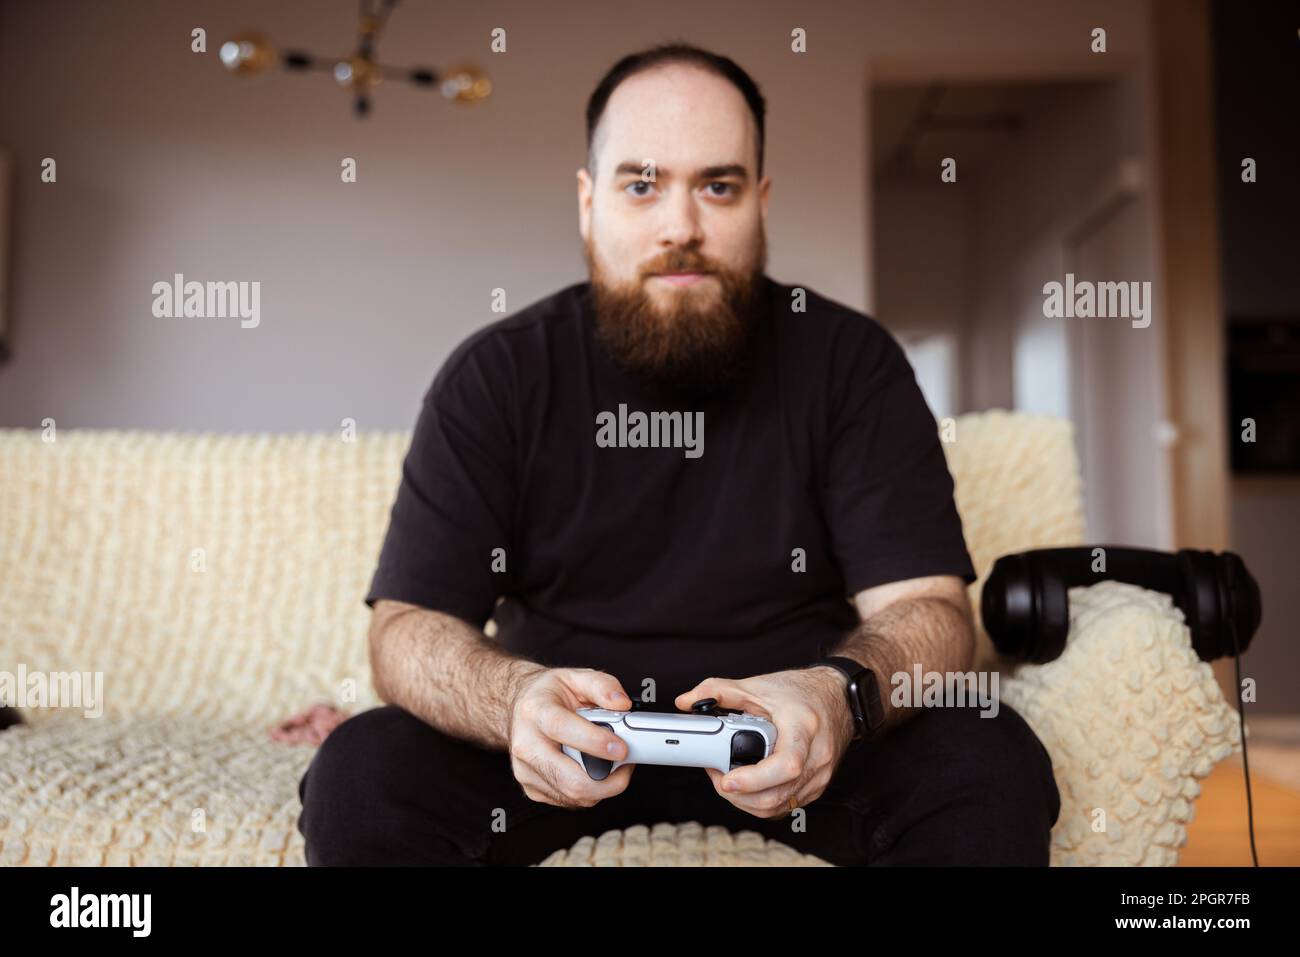 Fokussierter männlicher Gamer, komplett in schwarzer Kleidung gekleidet, mit einem Controller in der Hand. Lifestyle in einer virtuellen Welt Stockfoto